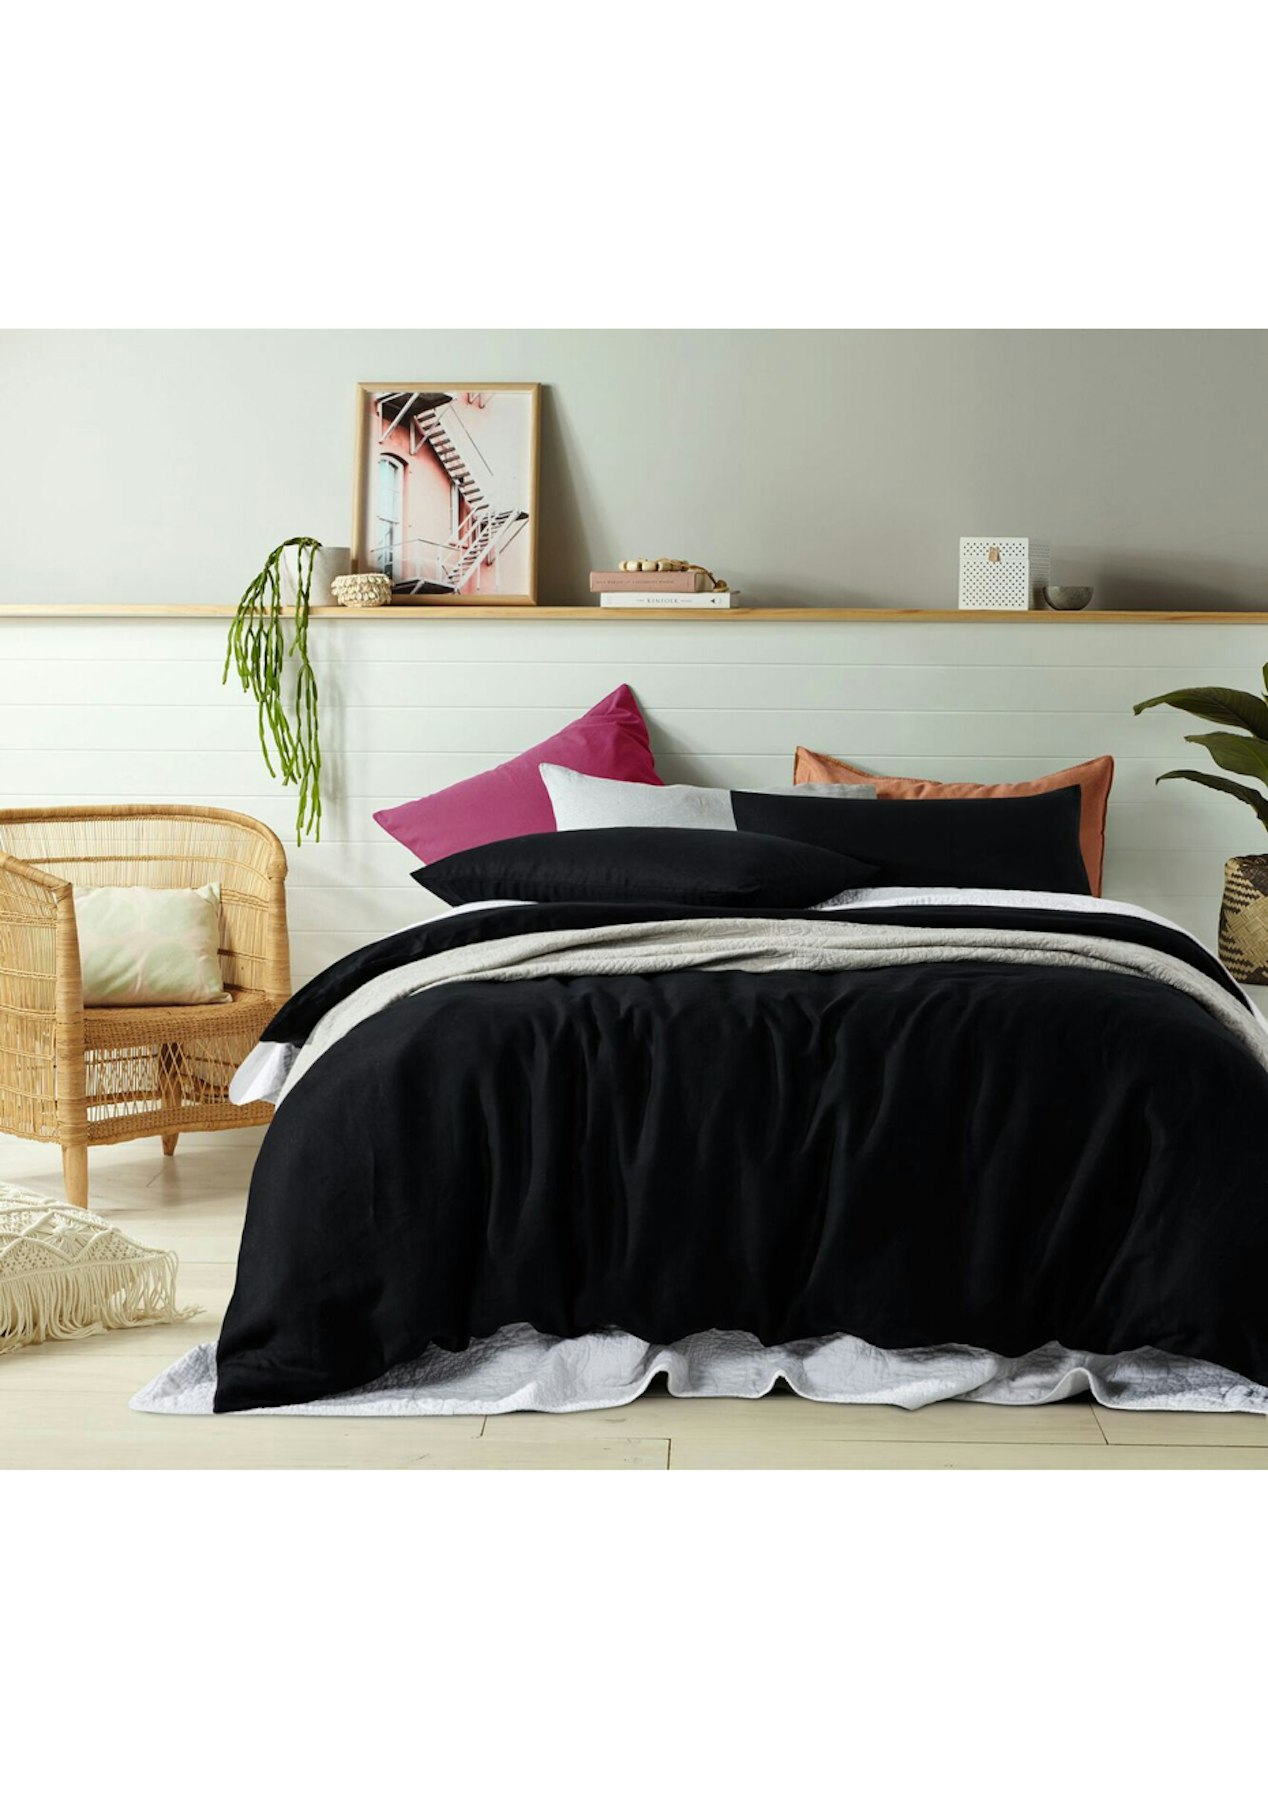 Vintage Design 100 Black French Linen Quilt Cover Set King Bed